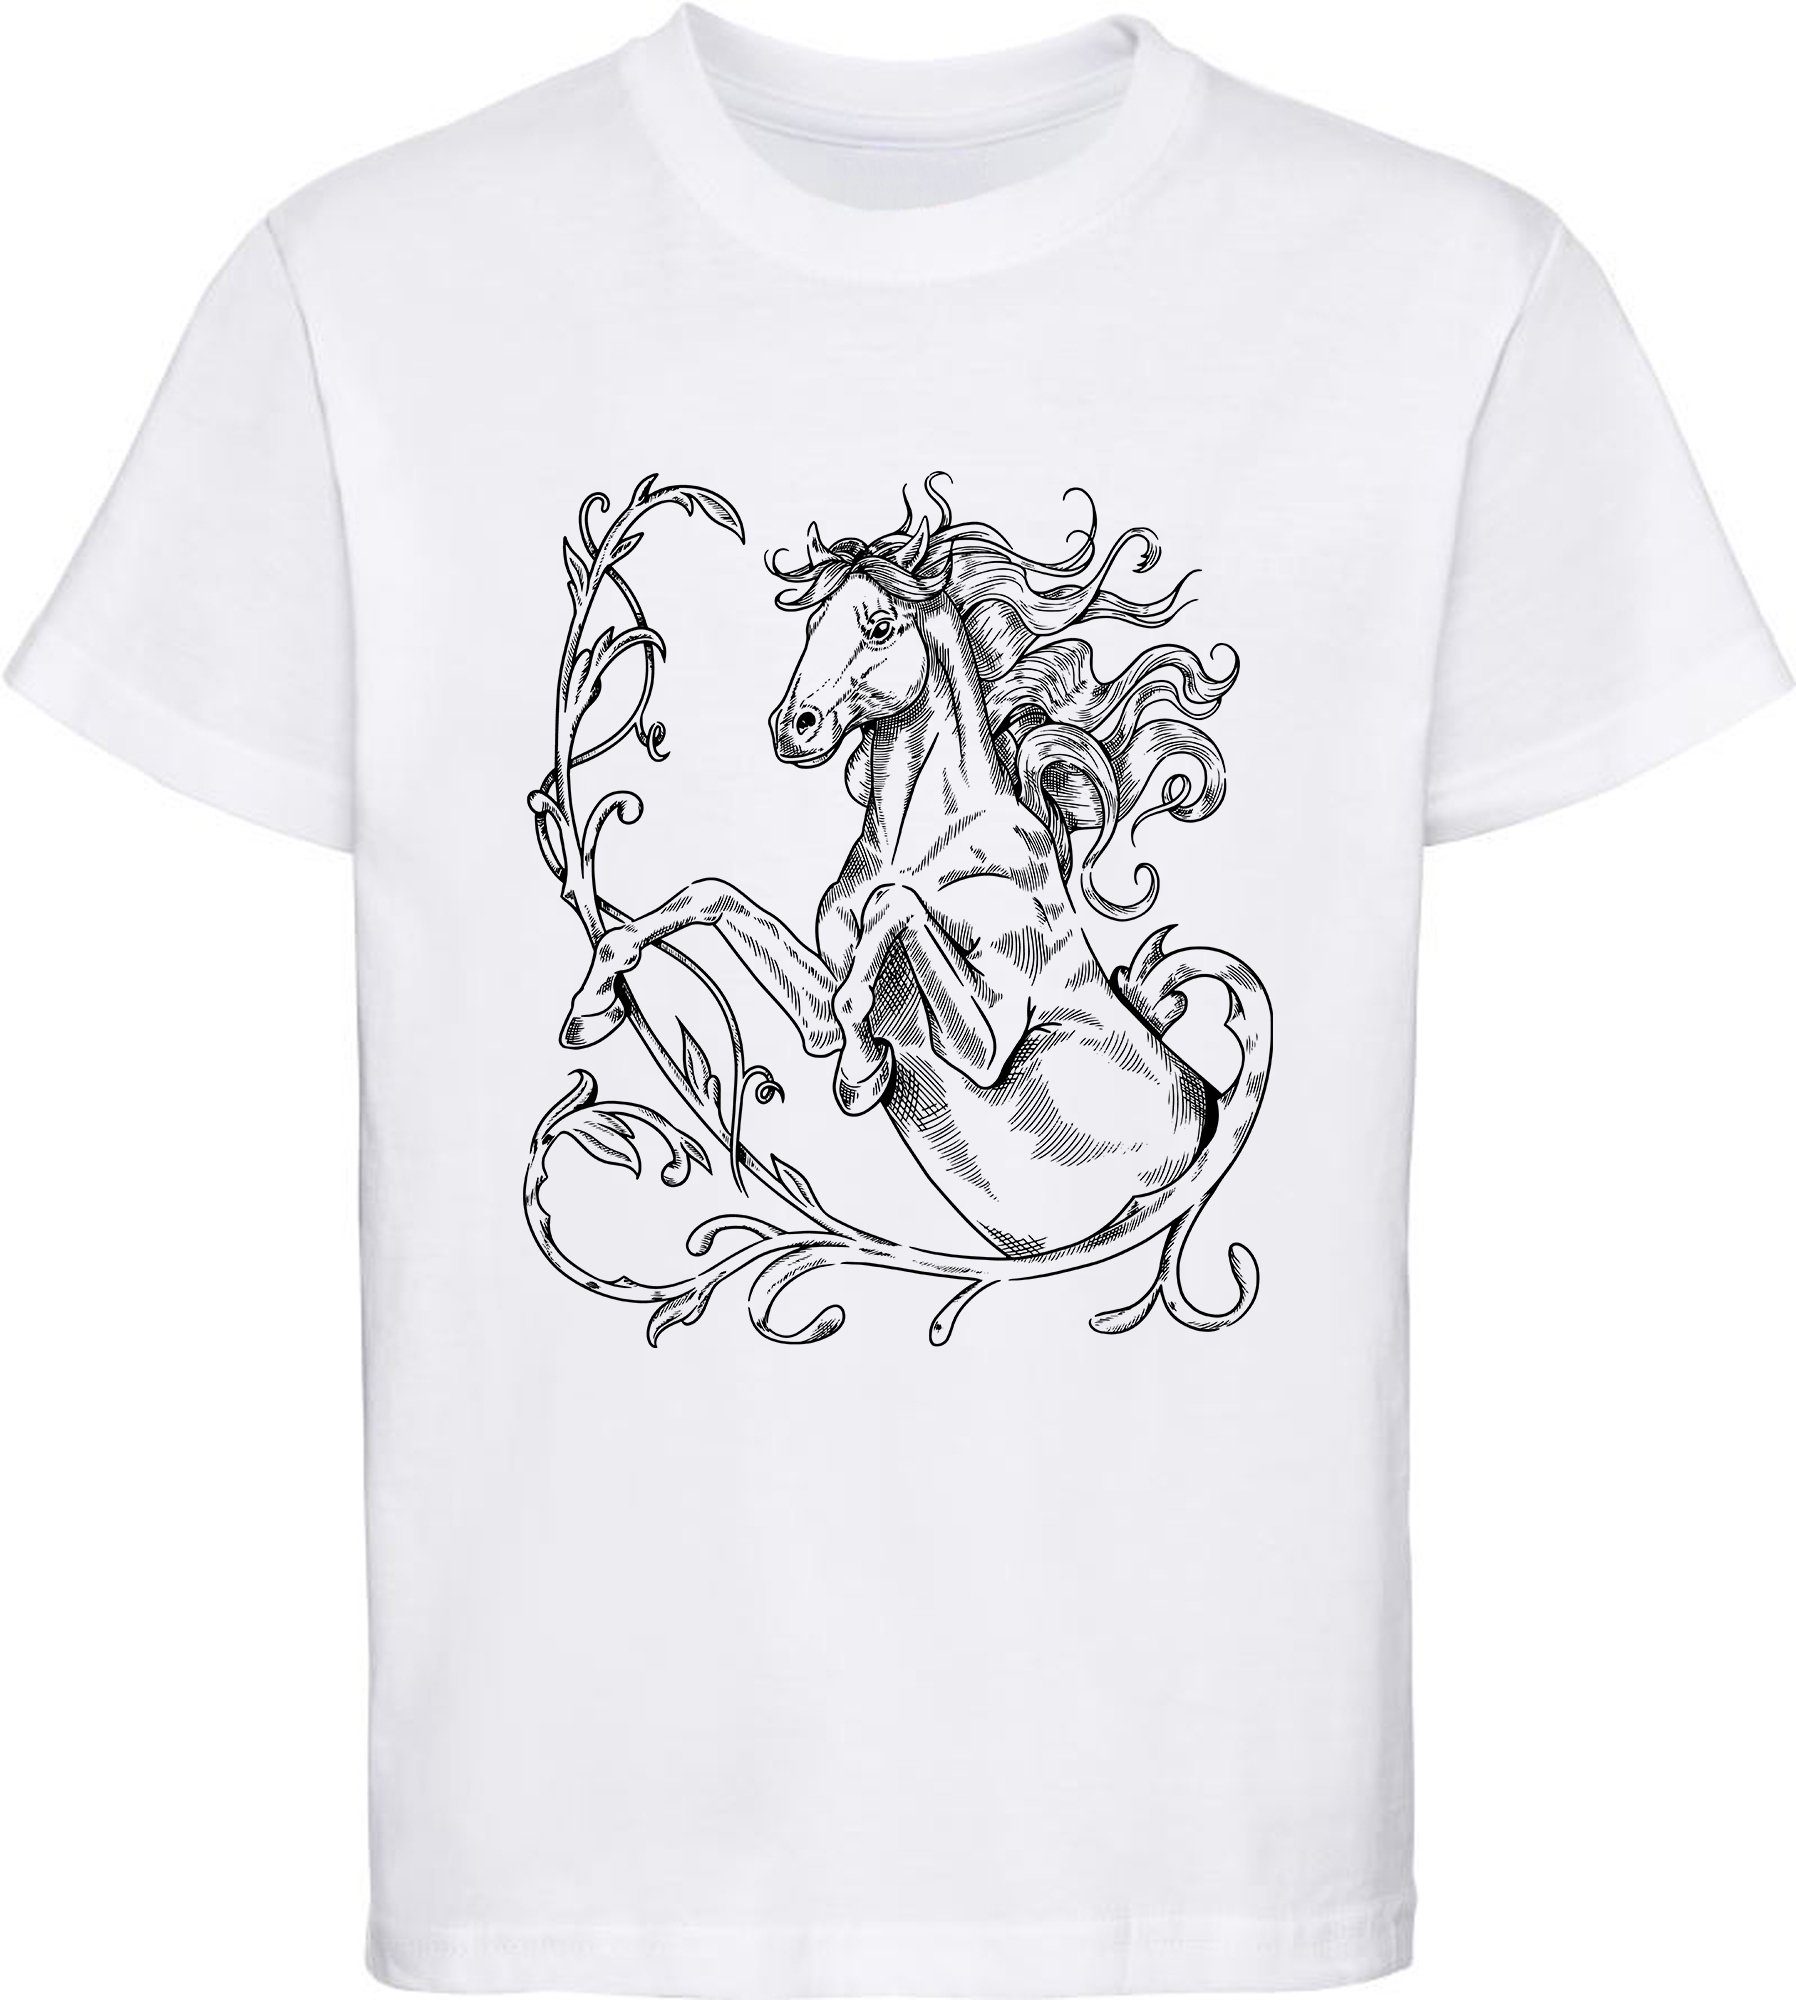 MyDesign24 Print-Shirt bedrucktes Mädchen T-Shirt stehende Pferde Silhouette Baumwollshirt mit Aufdruck, i146 weiss